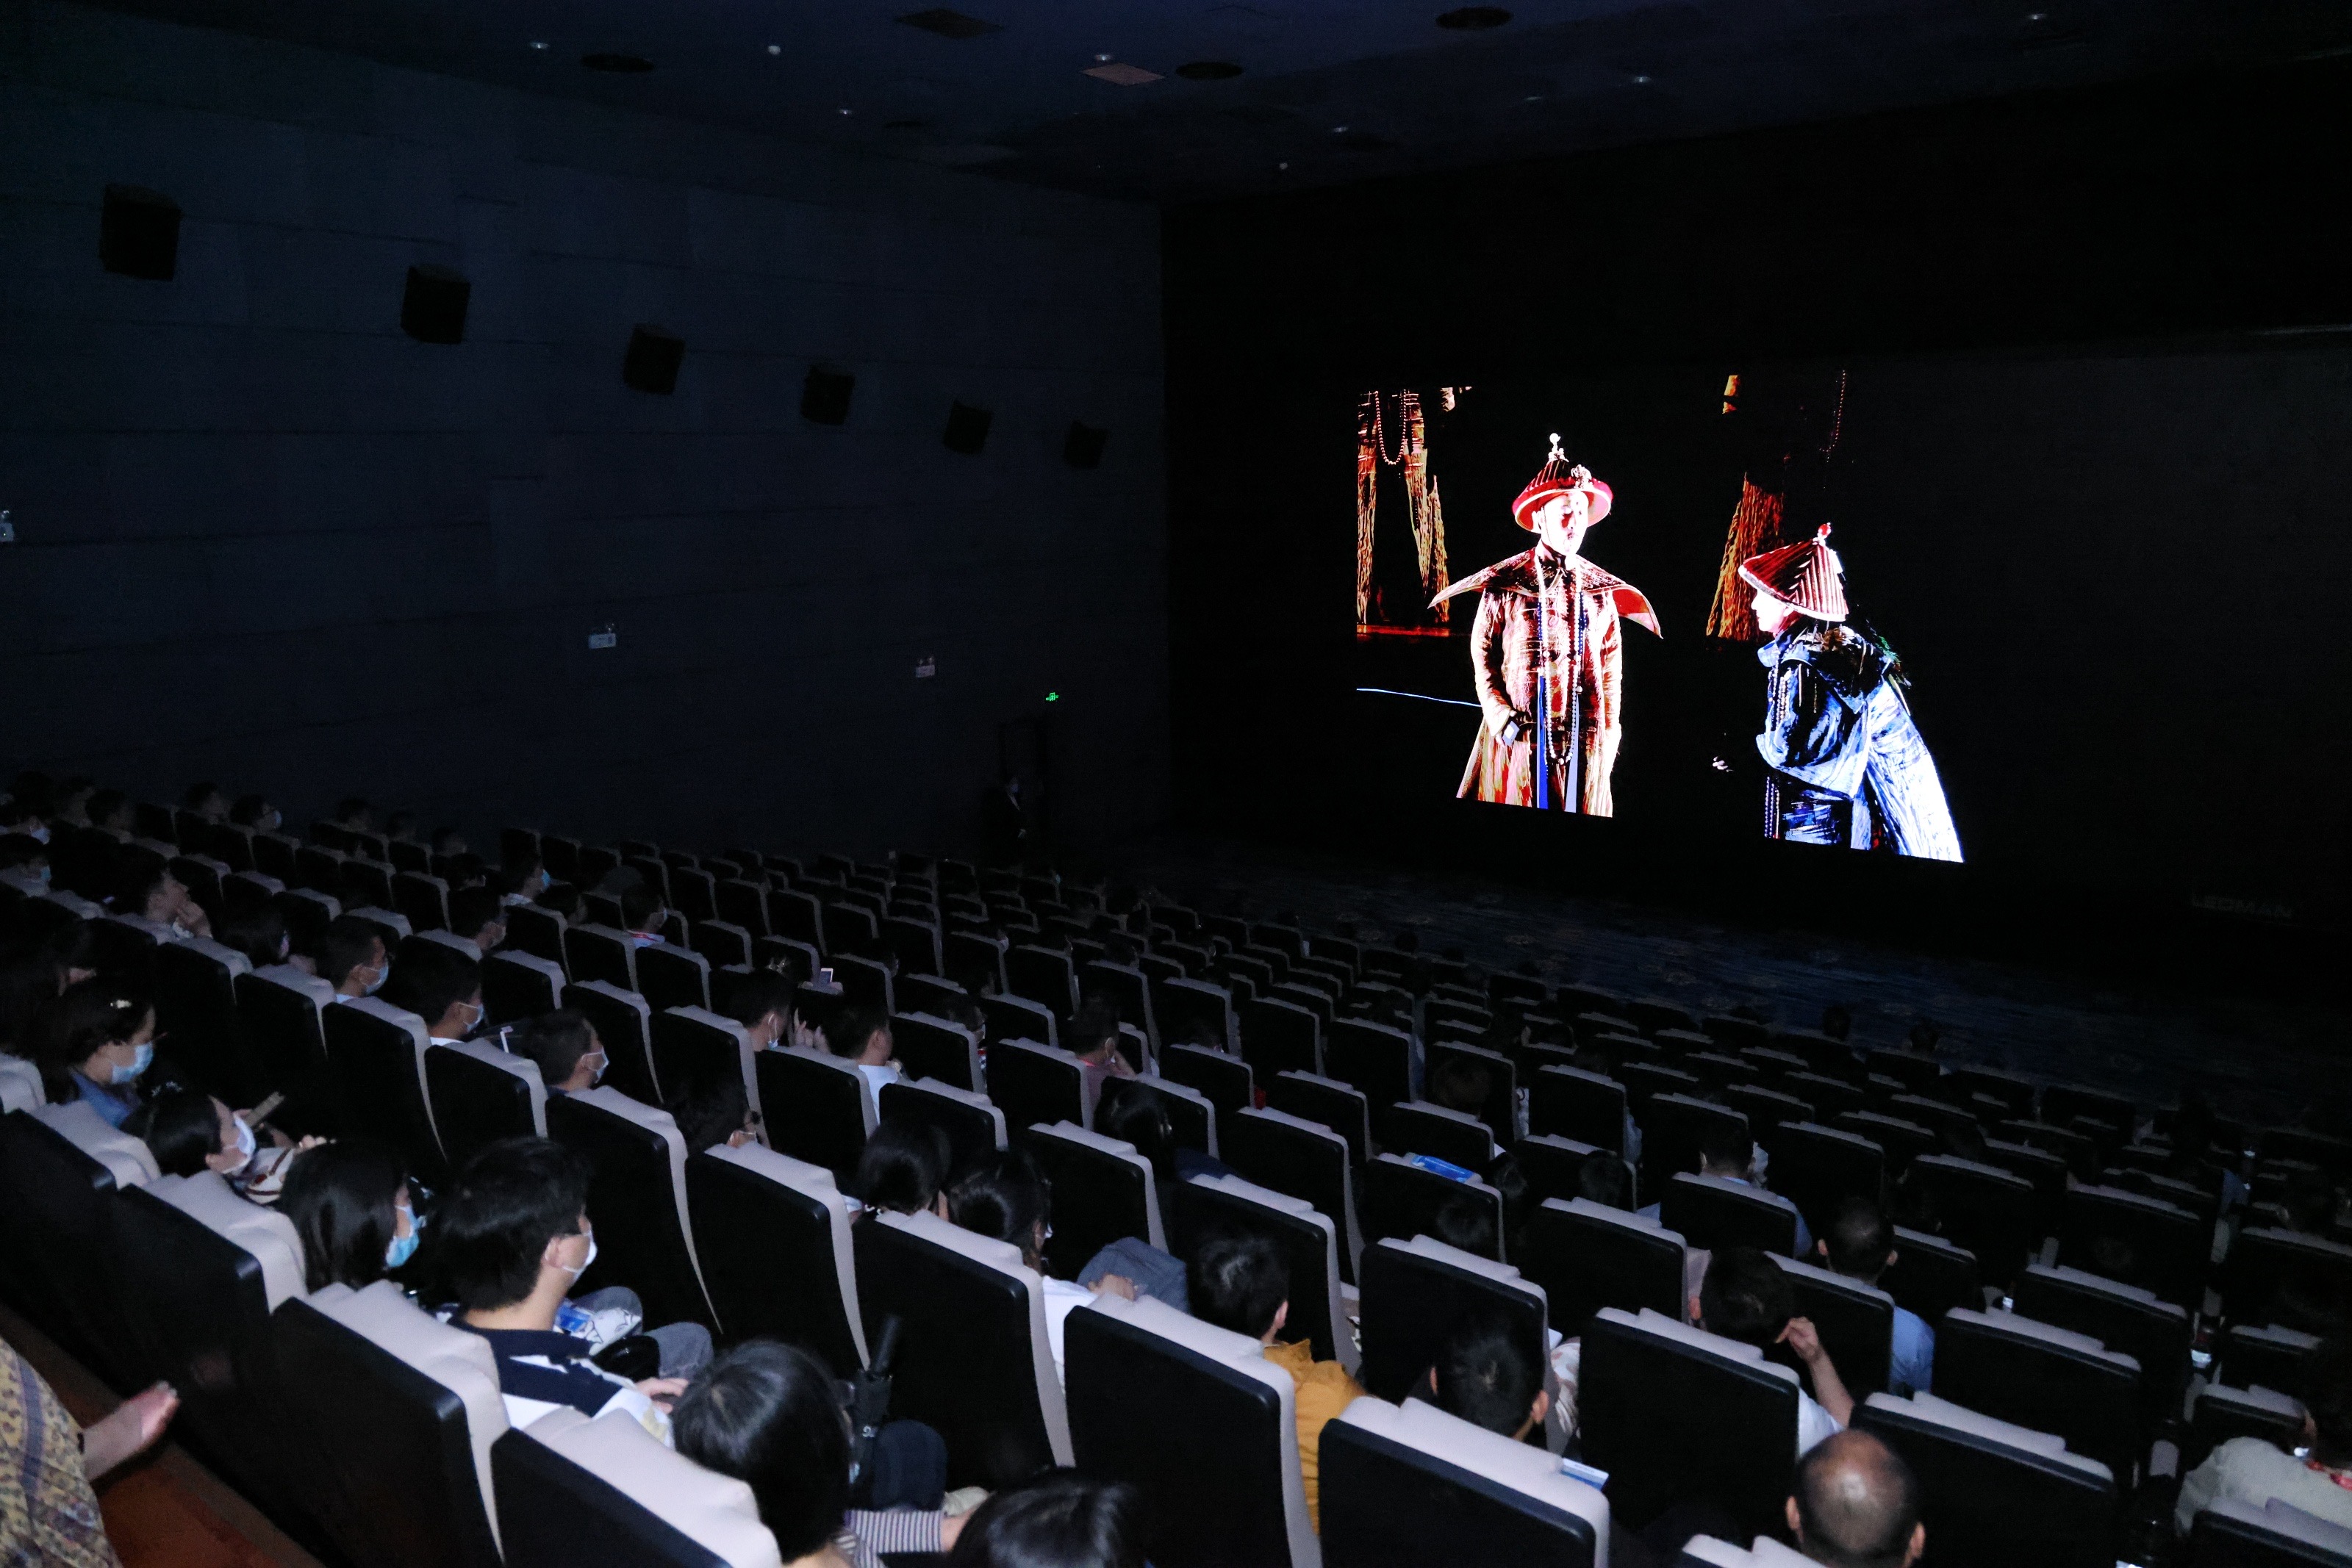 國家大劇院8K話劇影像《林則徐》在廣州首映